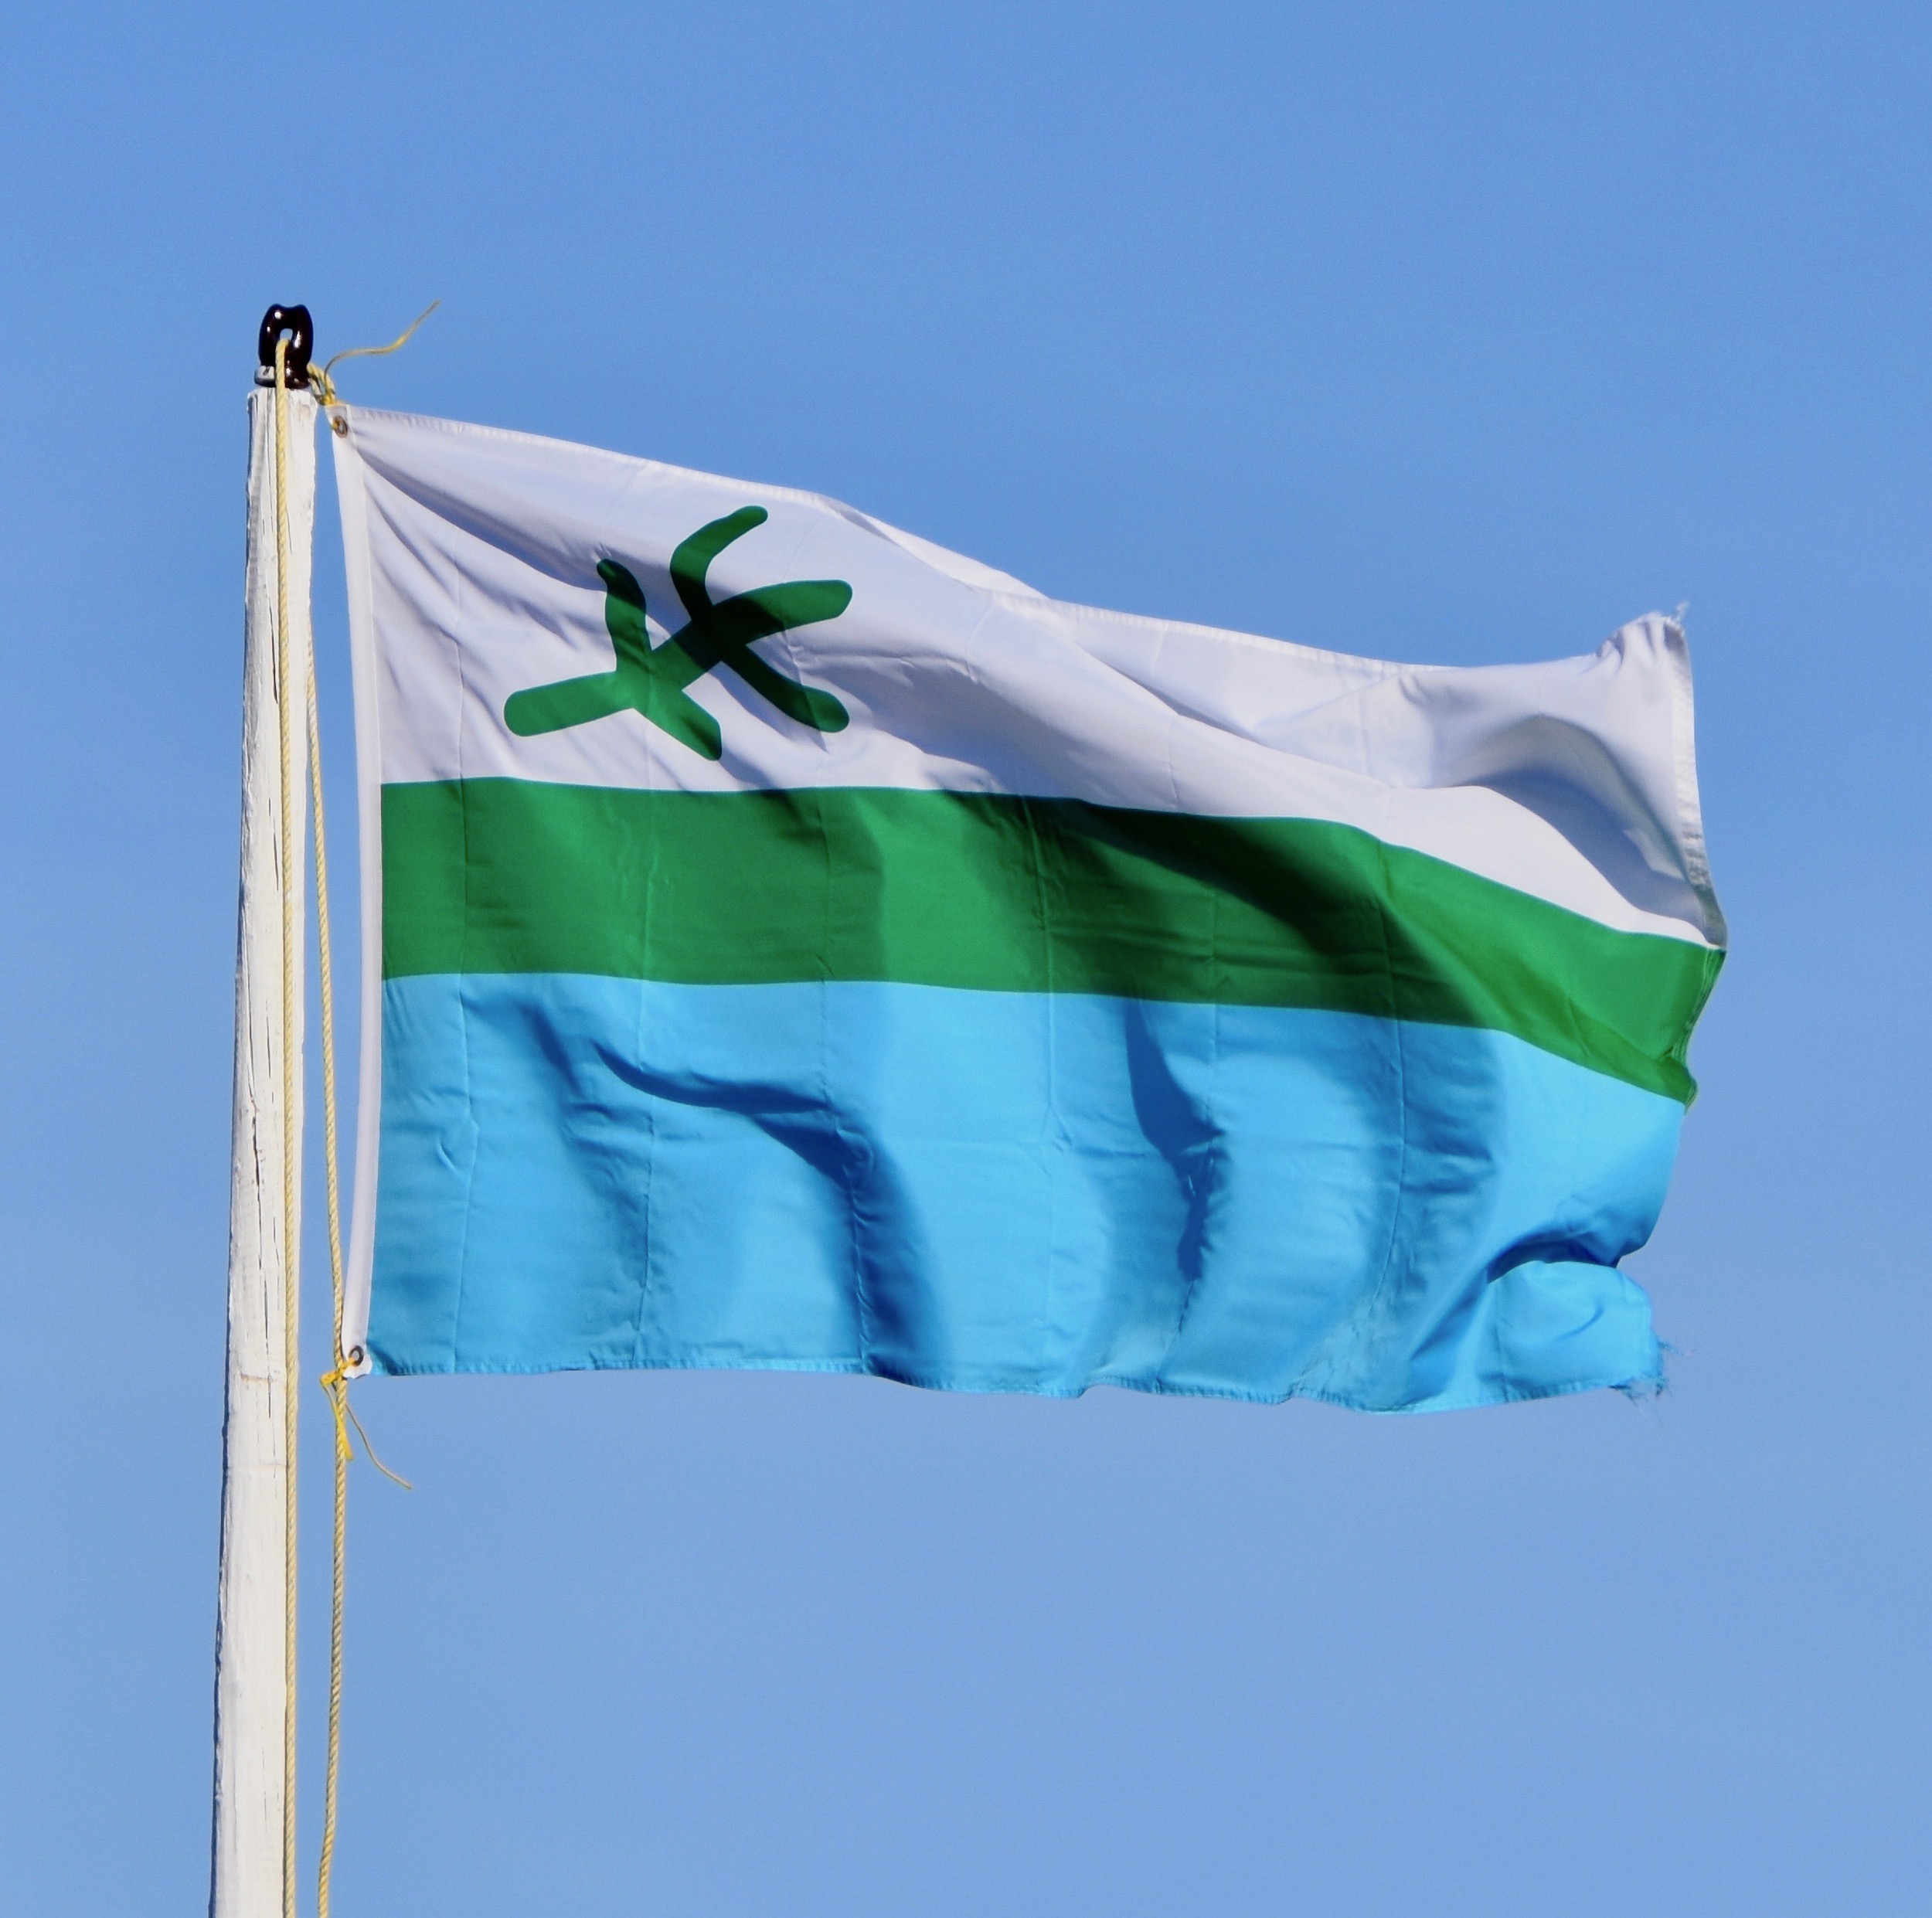 Flag of Labrador